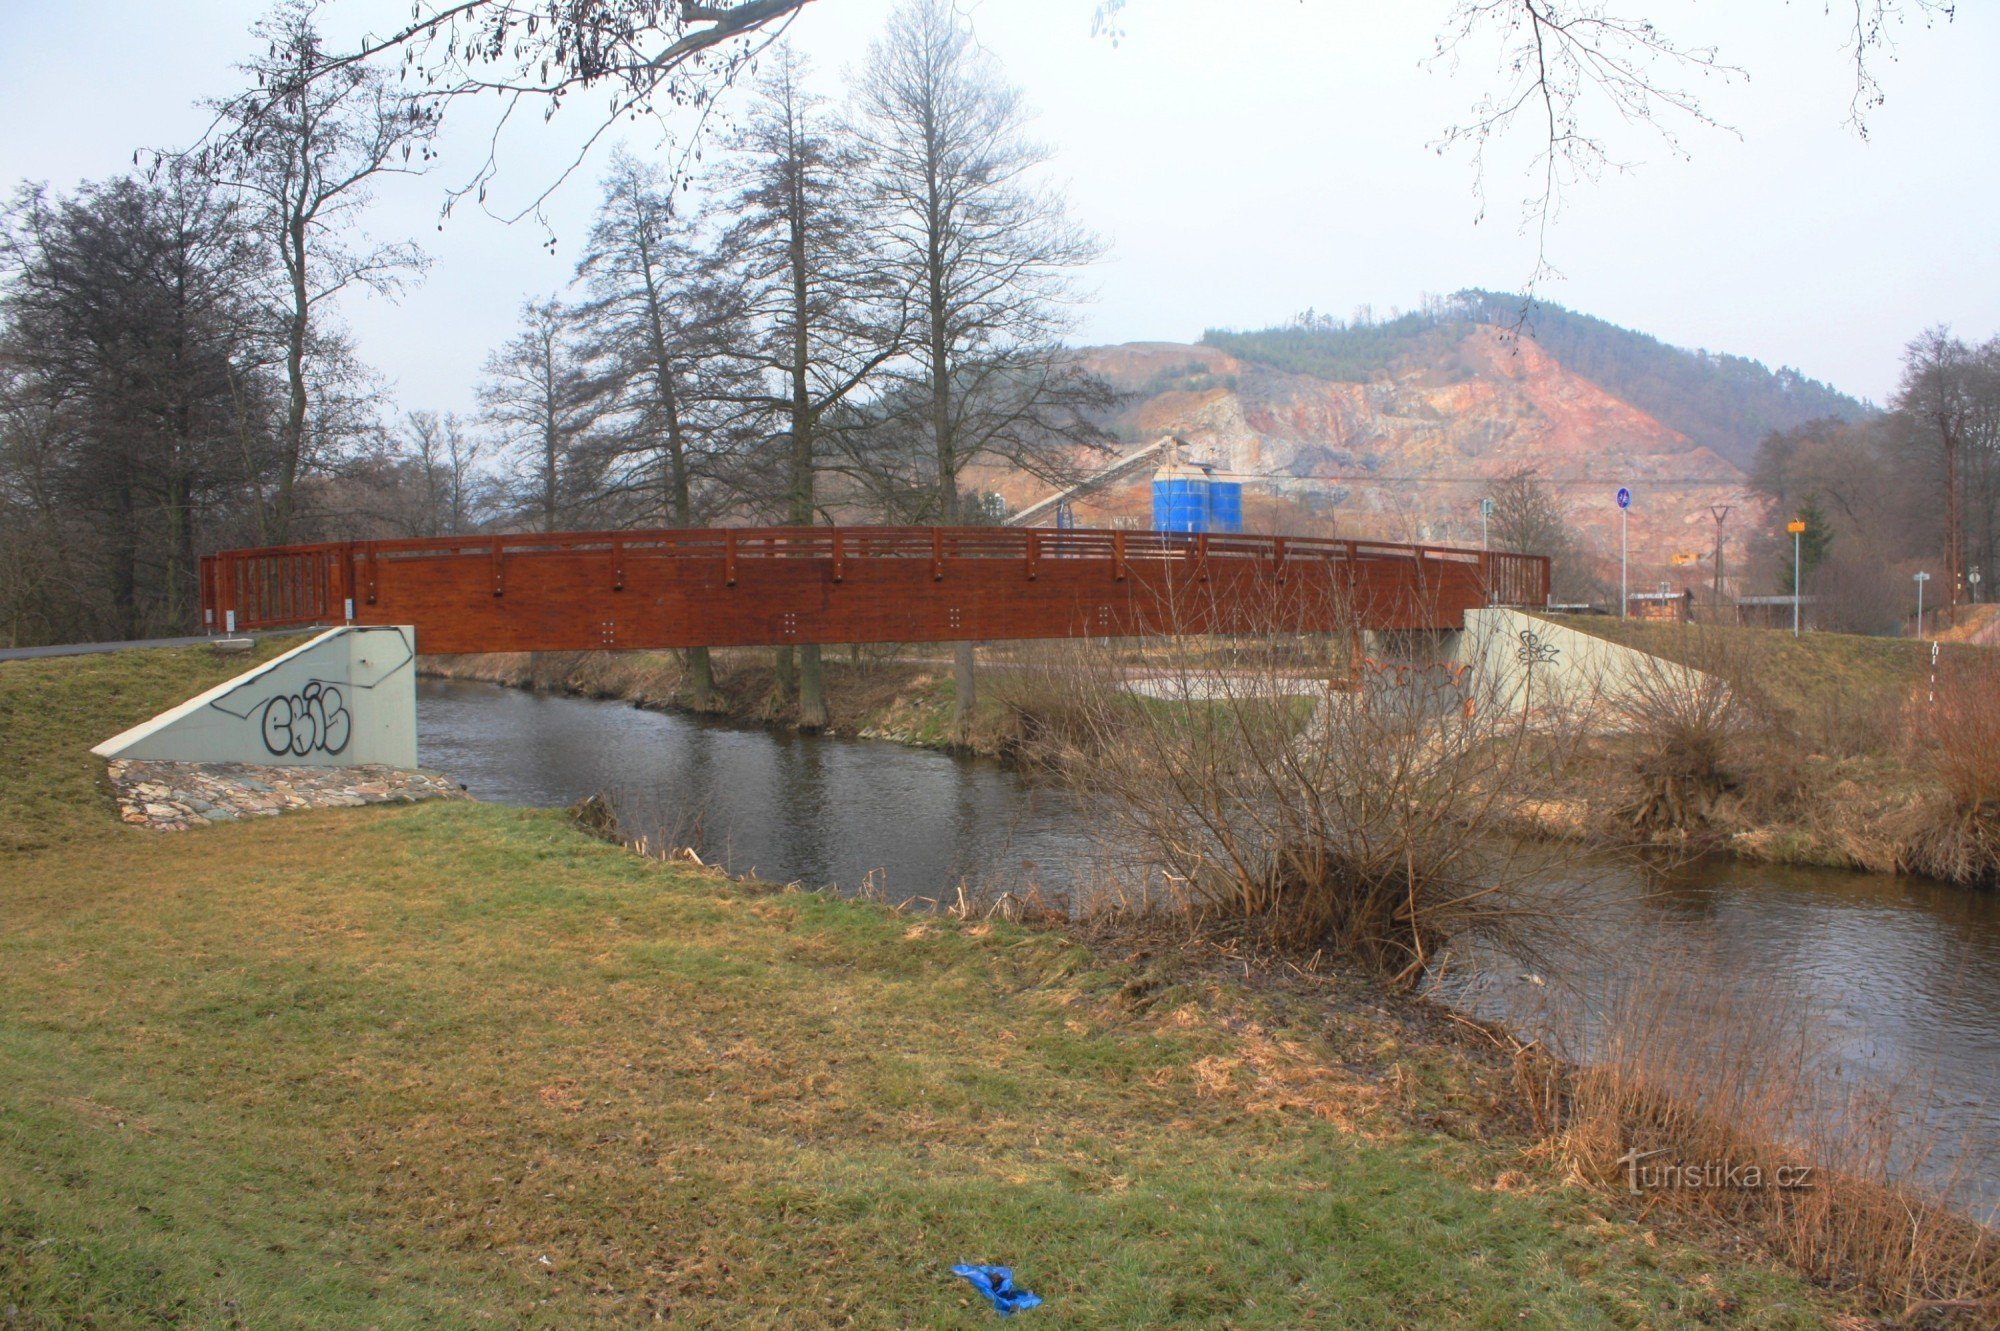 Nowy drewniany most nad rzeką Svratka